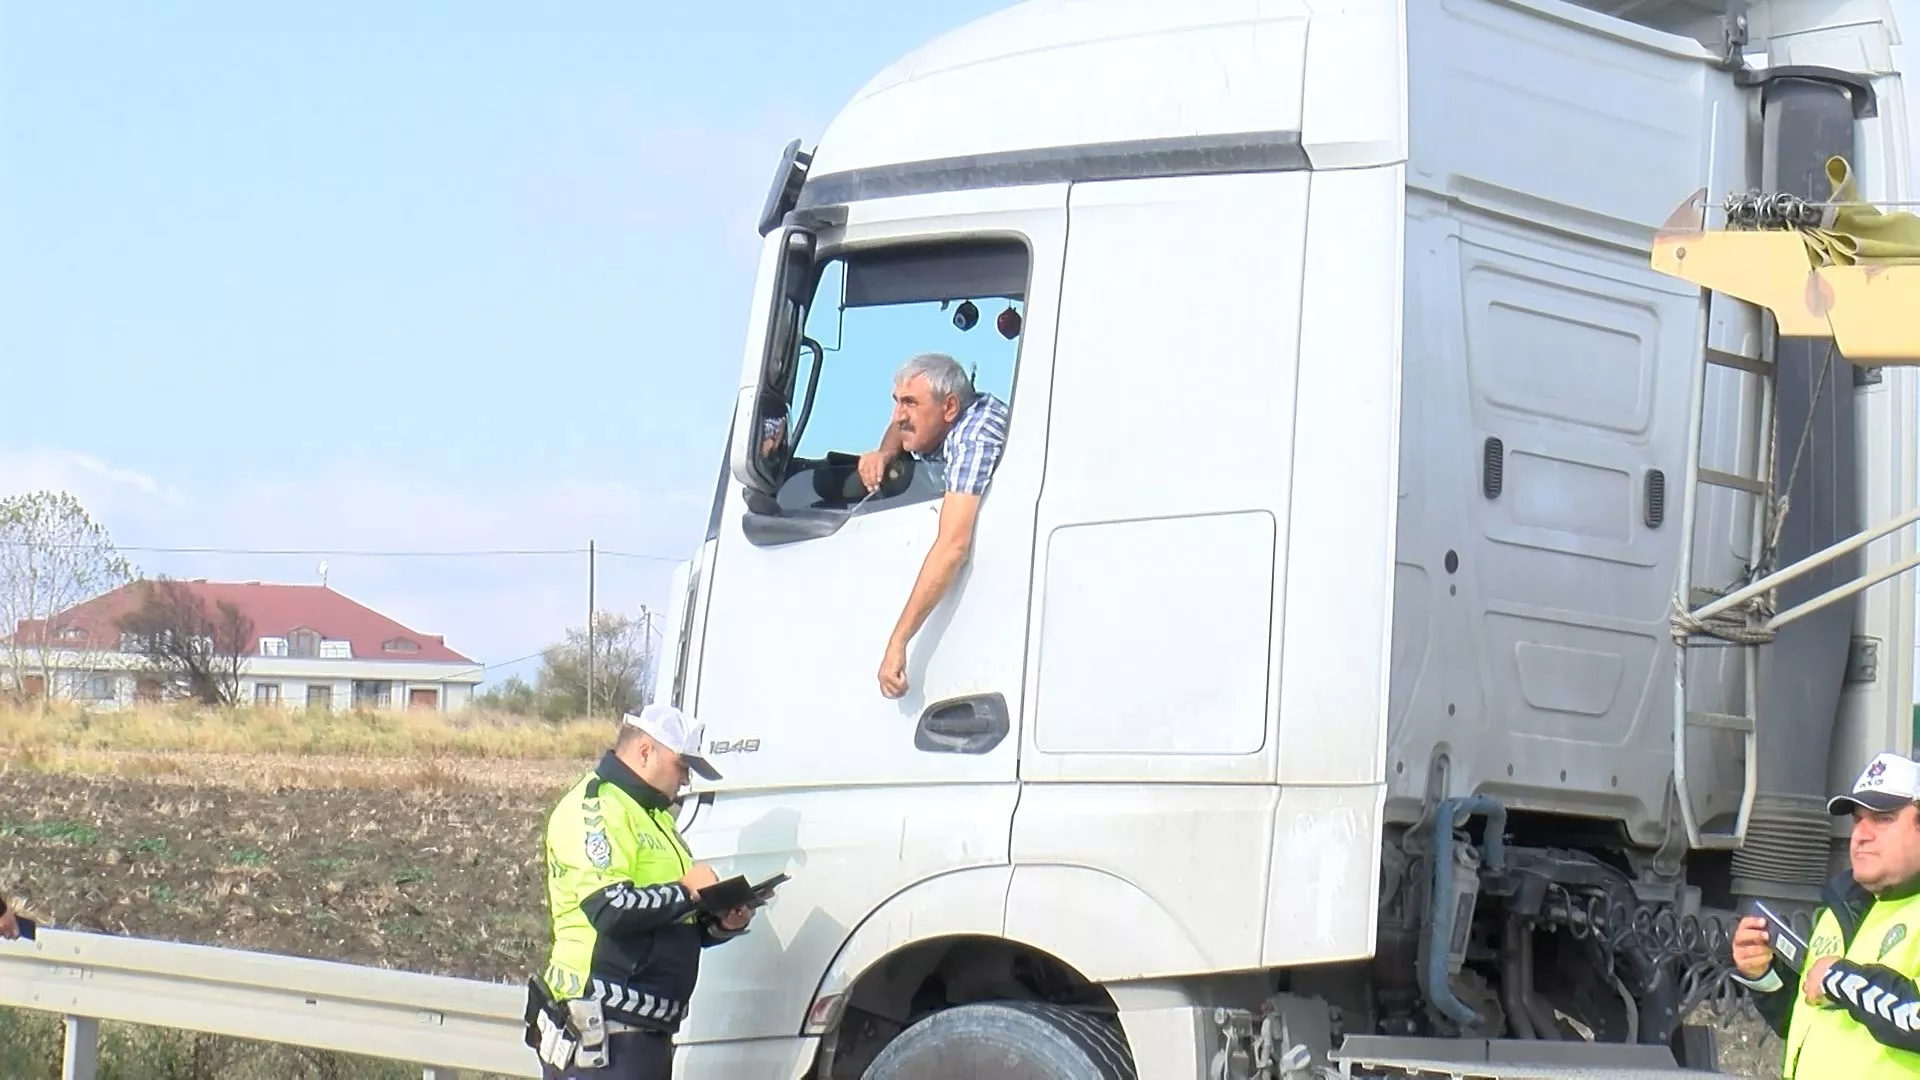 Arnavutkoyde hafriyat kamyonlarina denetim 1 - yerel haberler - haberton